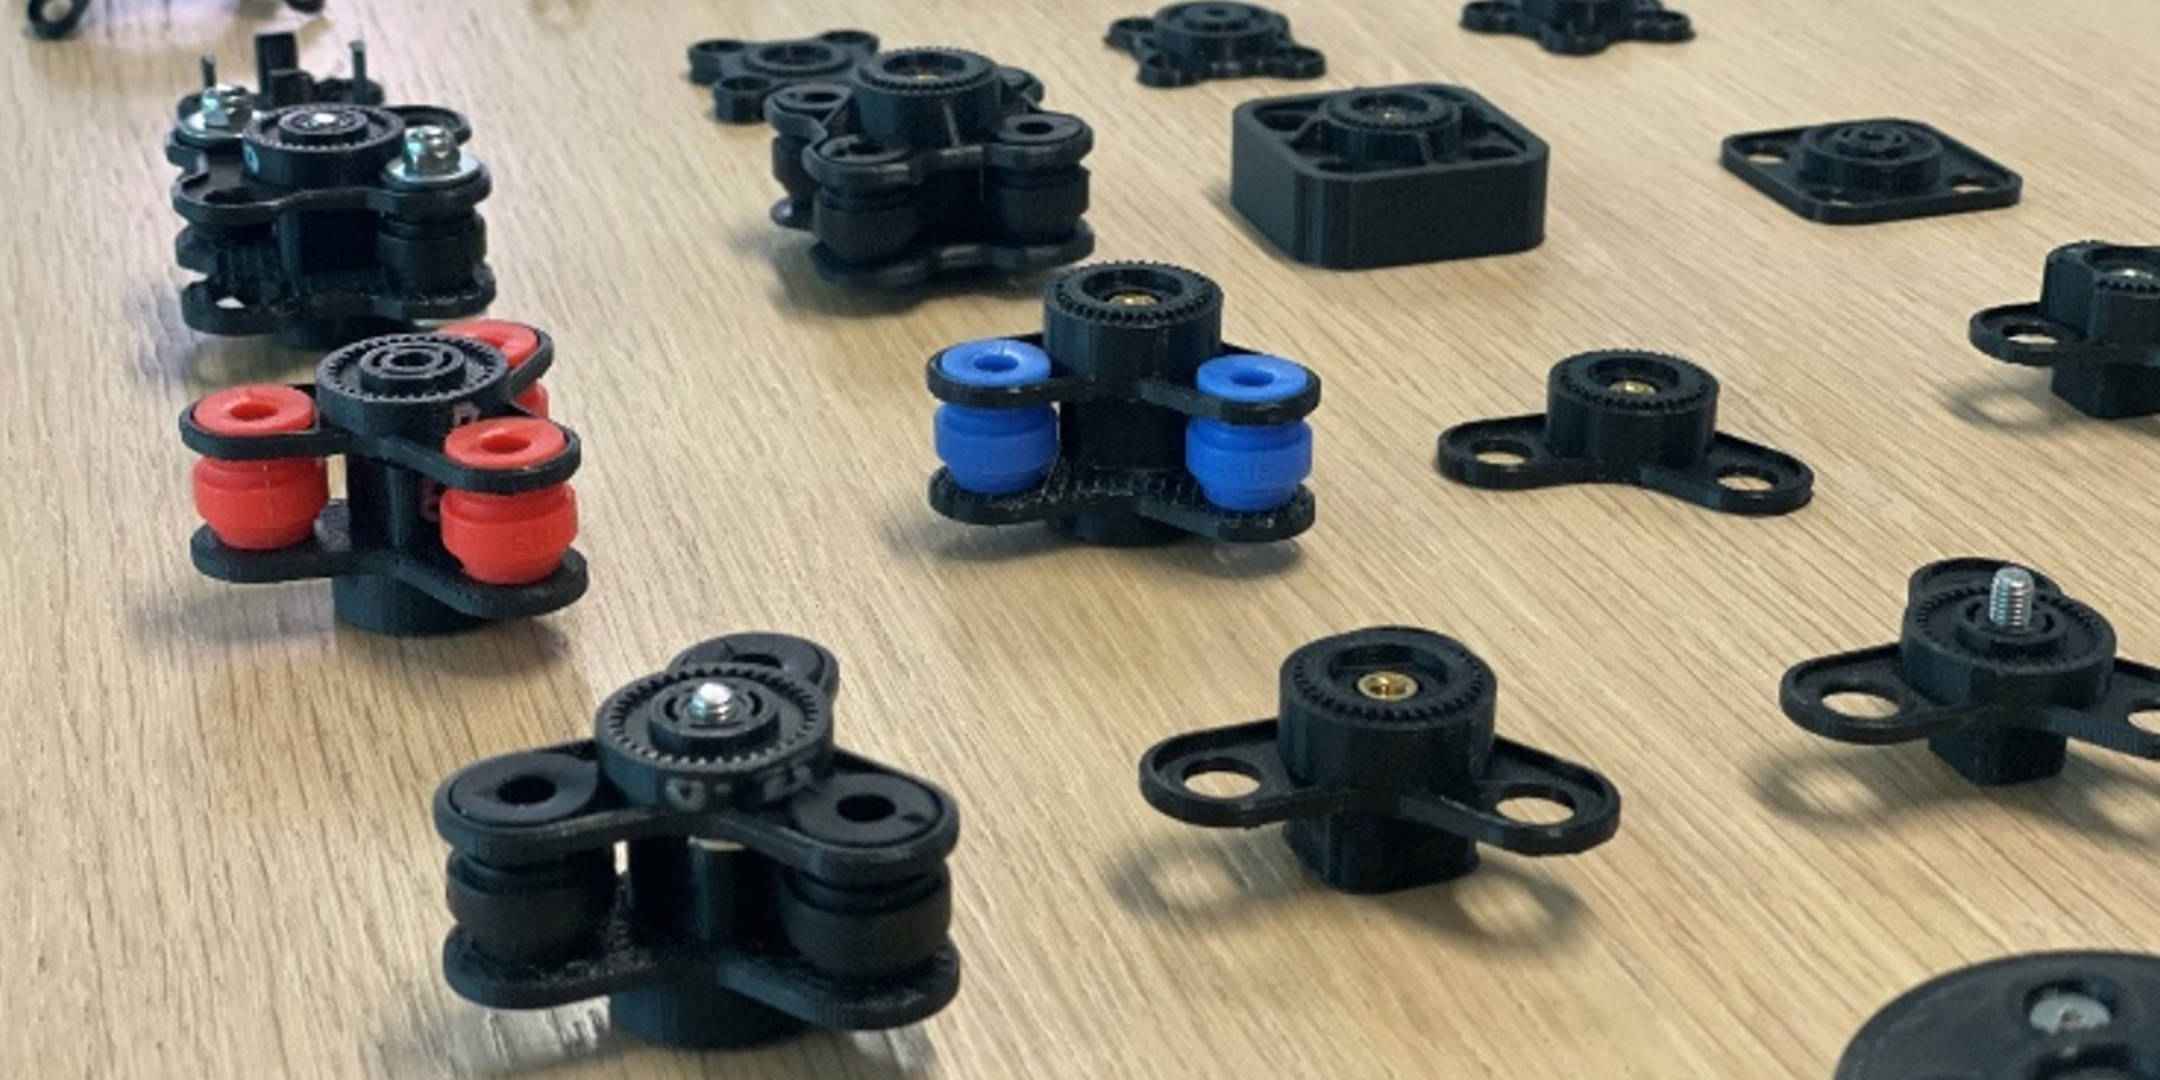 Quad Lock prototypes